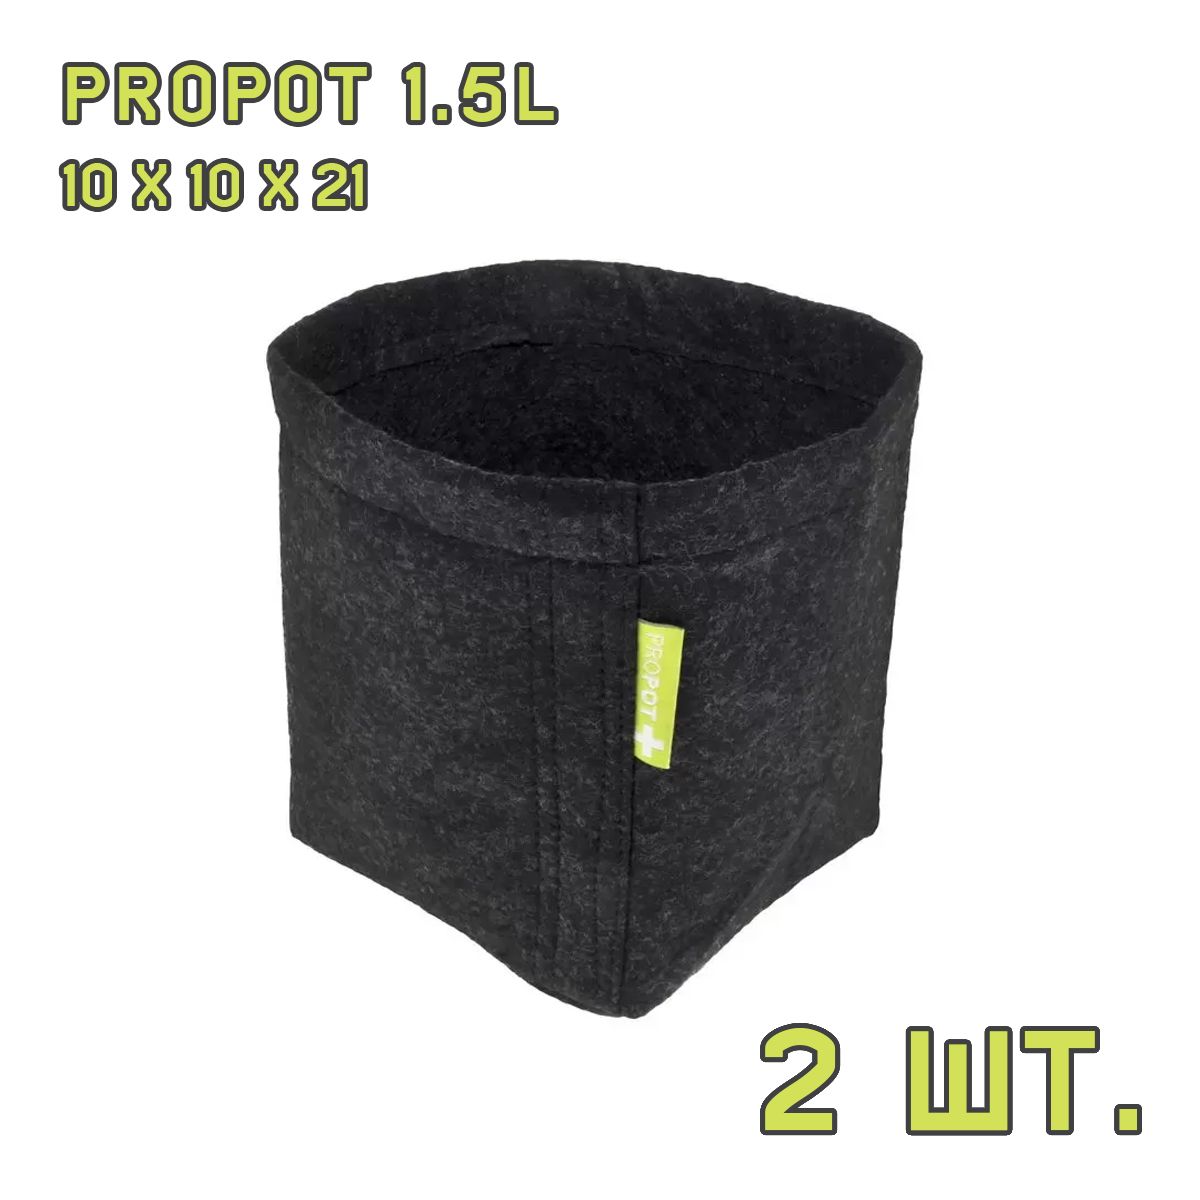 Текстильный горшок PROPOT 1.5L 2 шт.